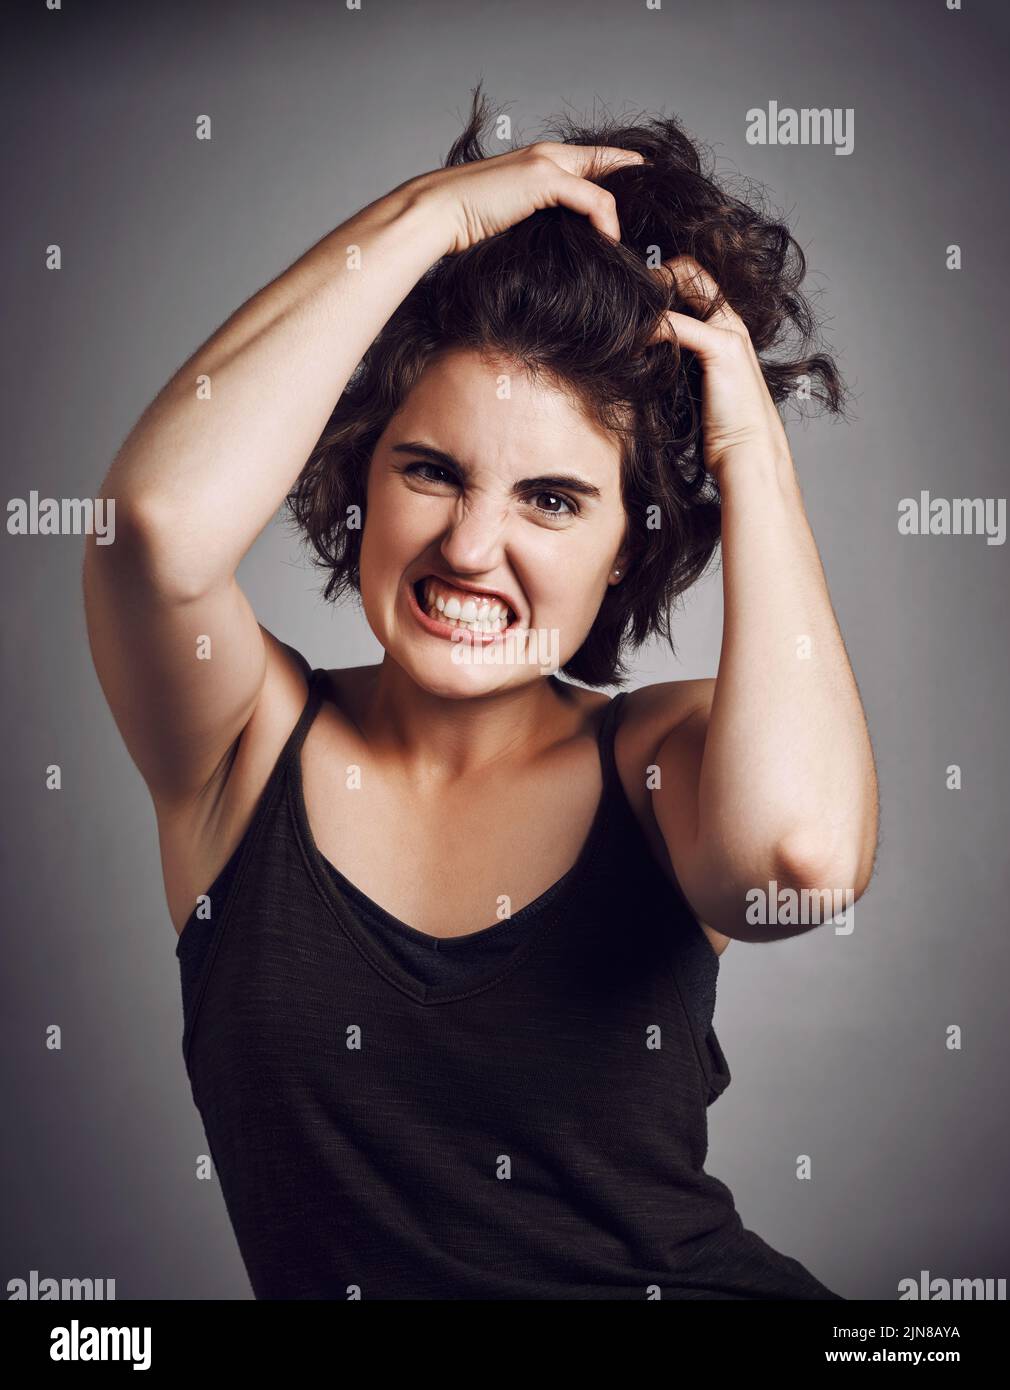 Cant contenere la rabbia. Ritratto di studio di una giovane donna attraente tirando i capelli con rabbia, mentre in piedi su uno sfondo grigio. Foto Stock